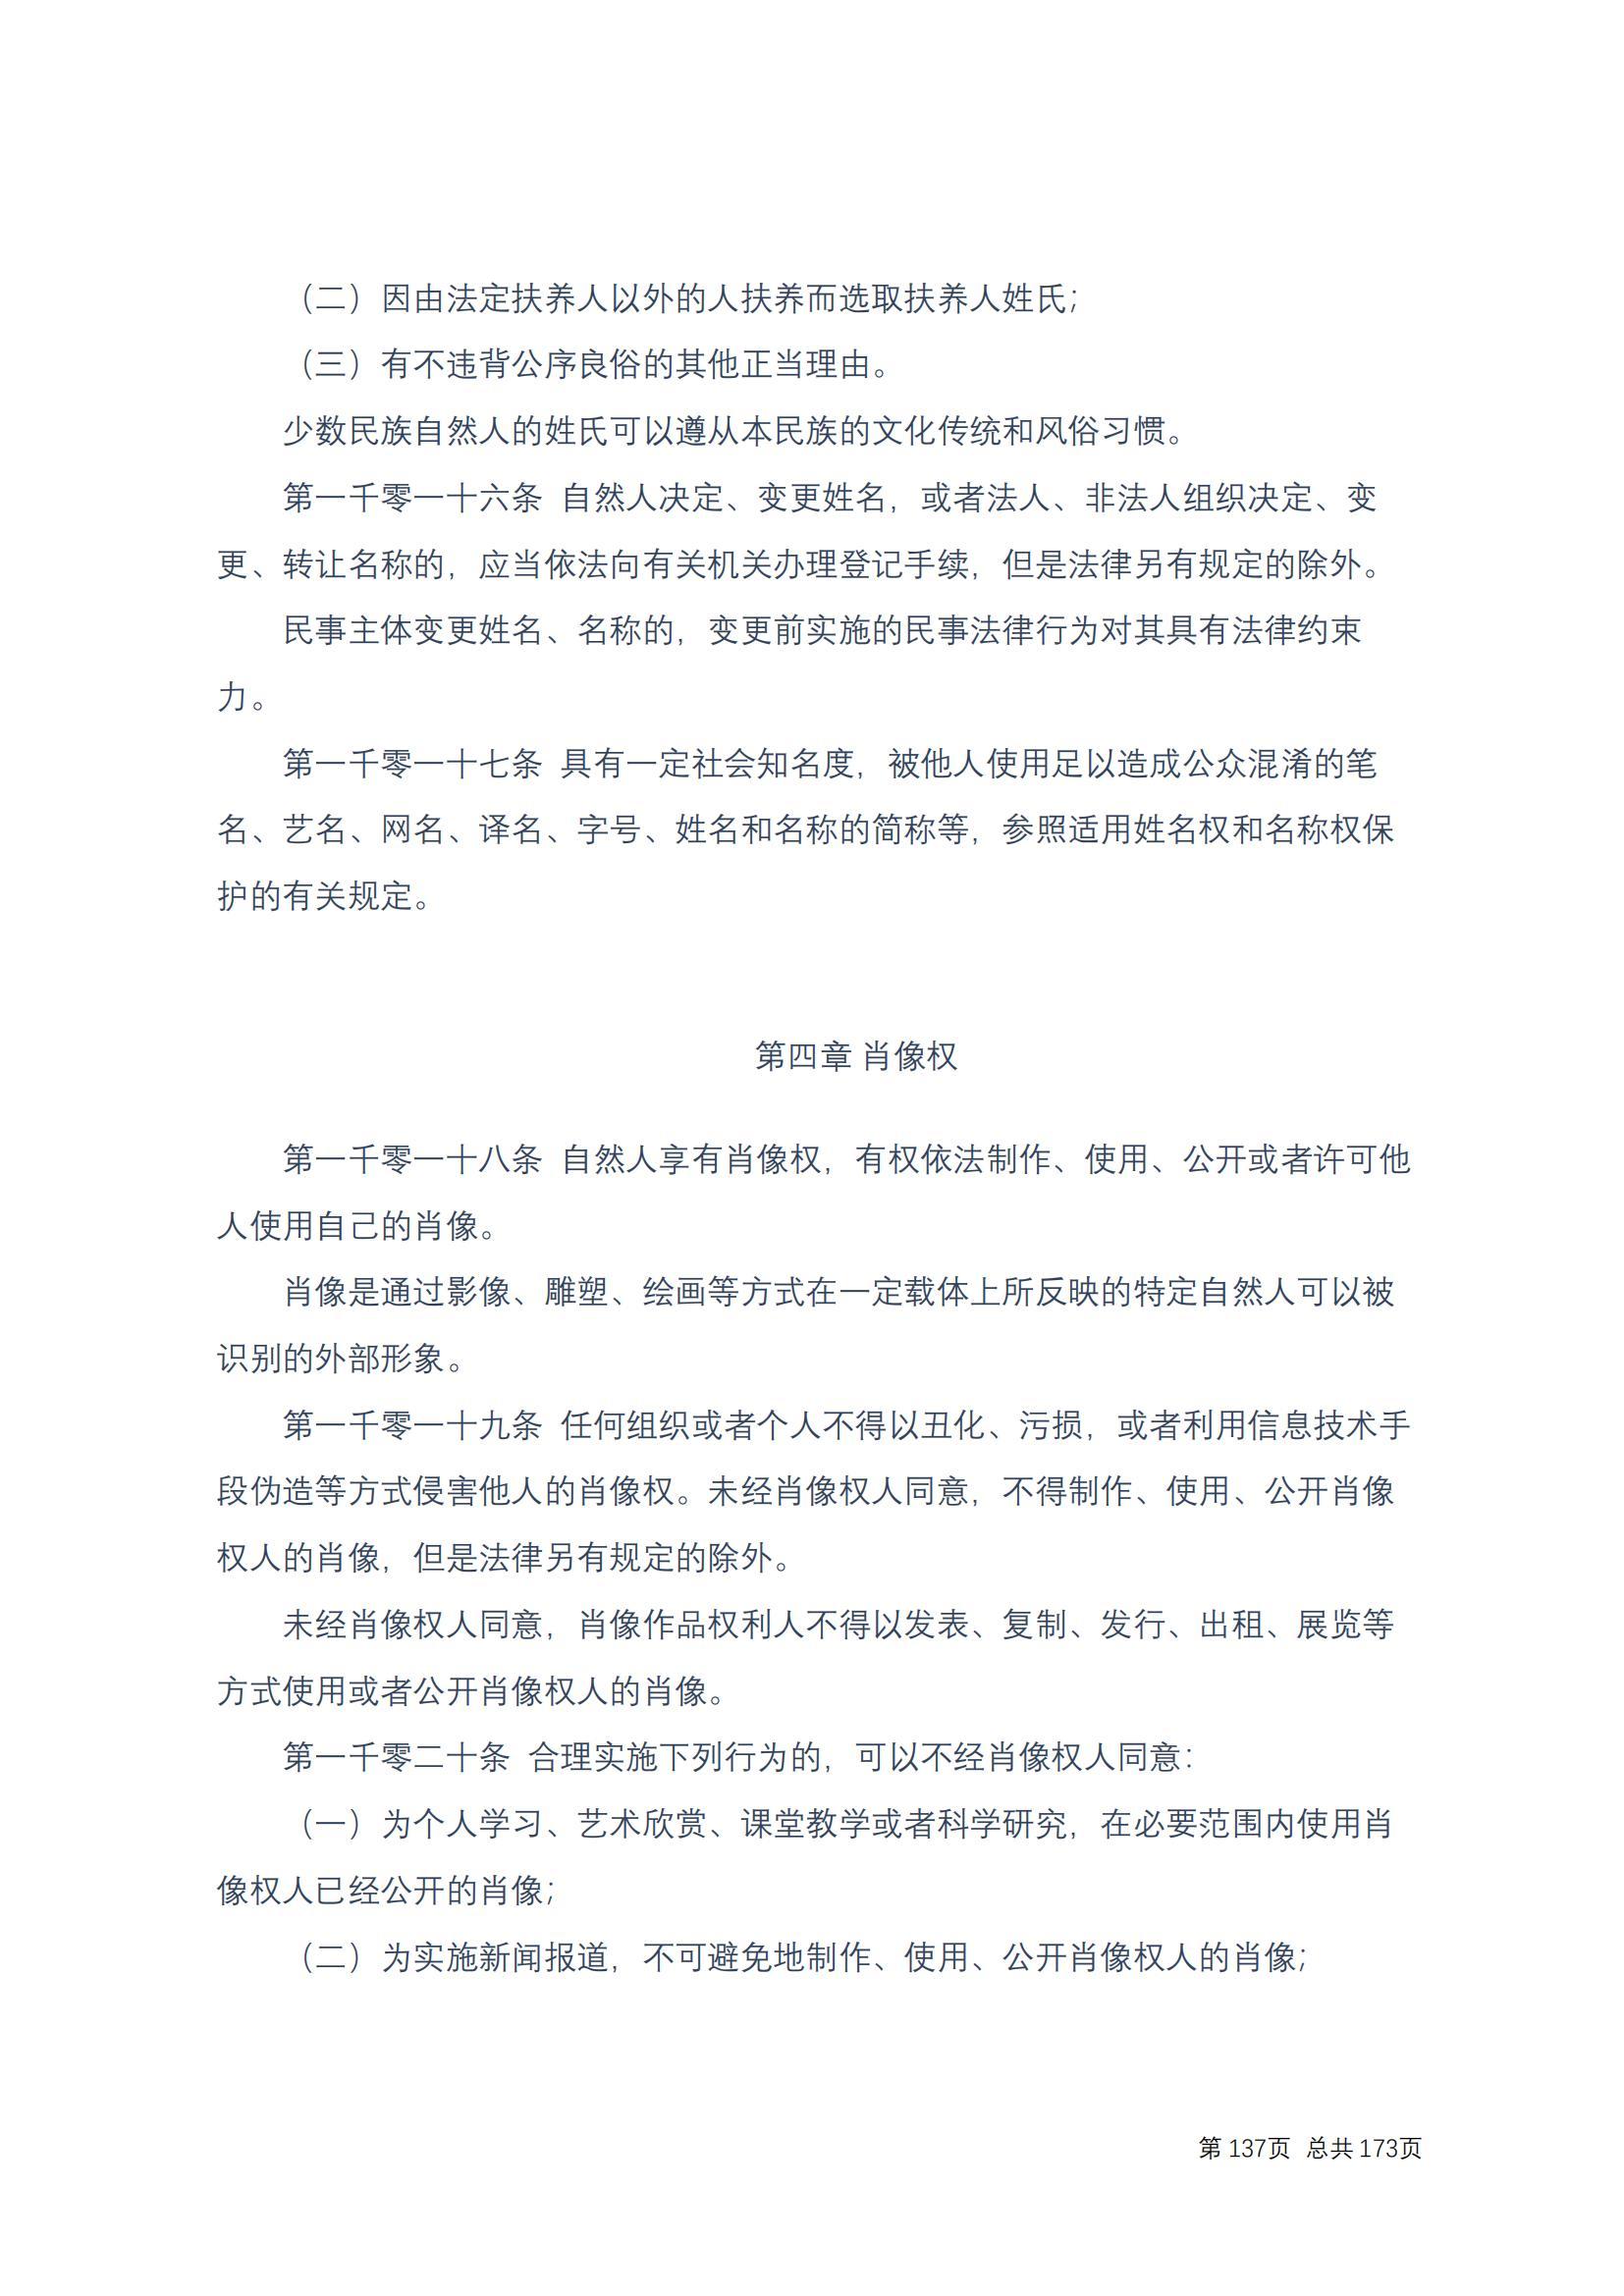 中华人民共和国民法典 修改过_136